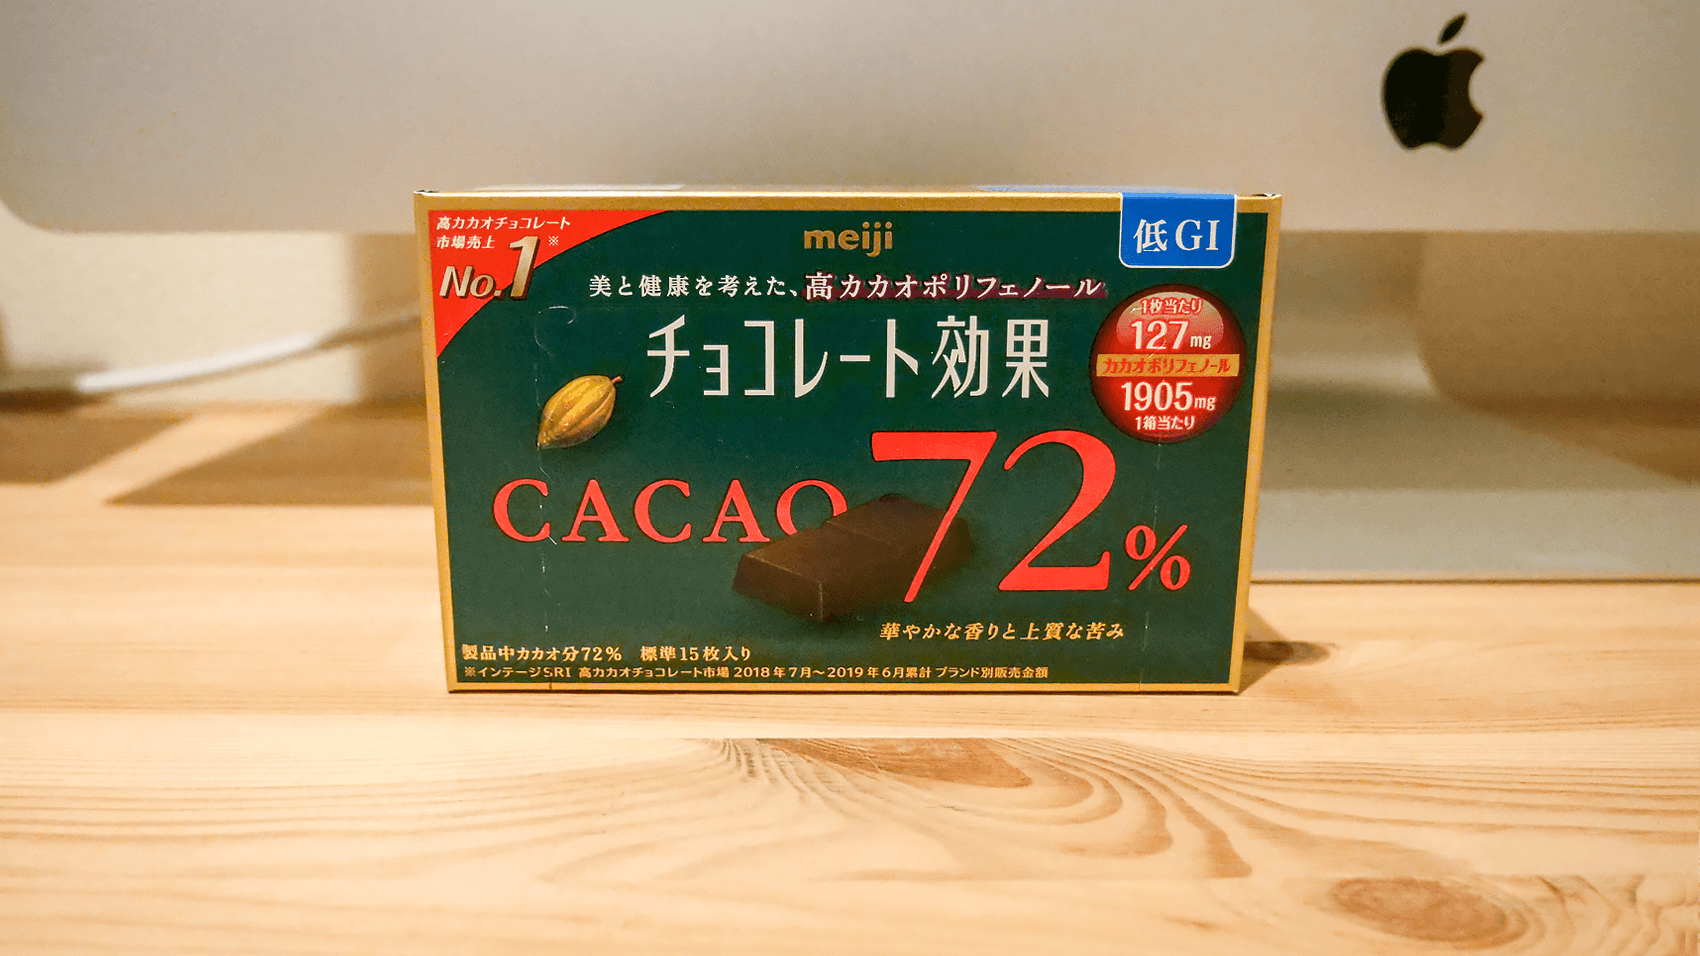 meiji チョコレート効果のパッケージ画像